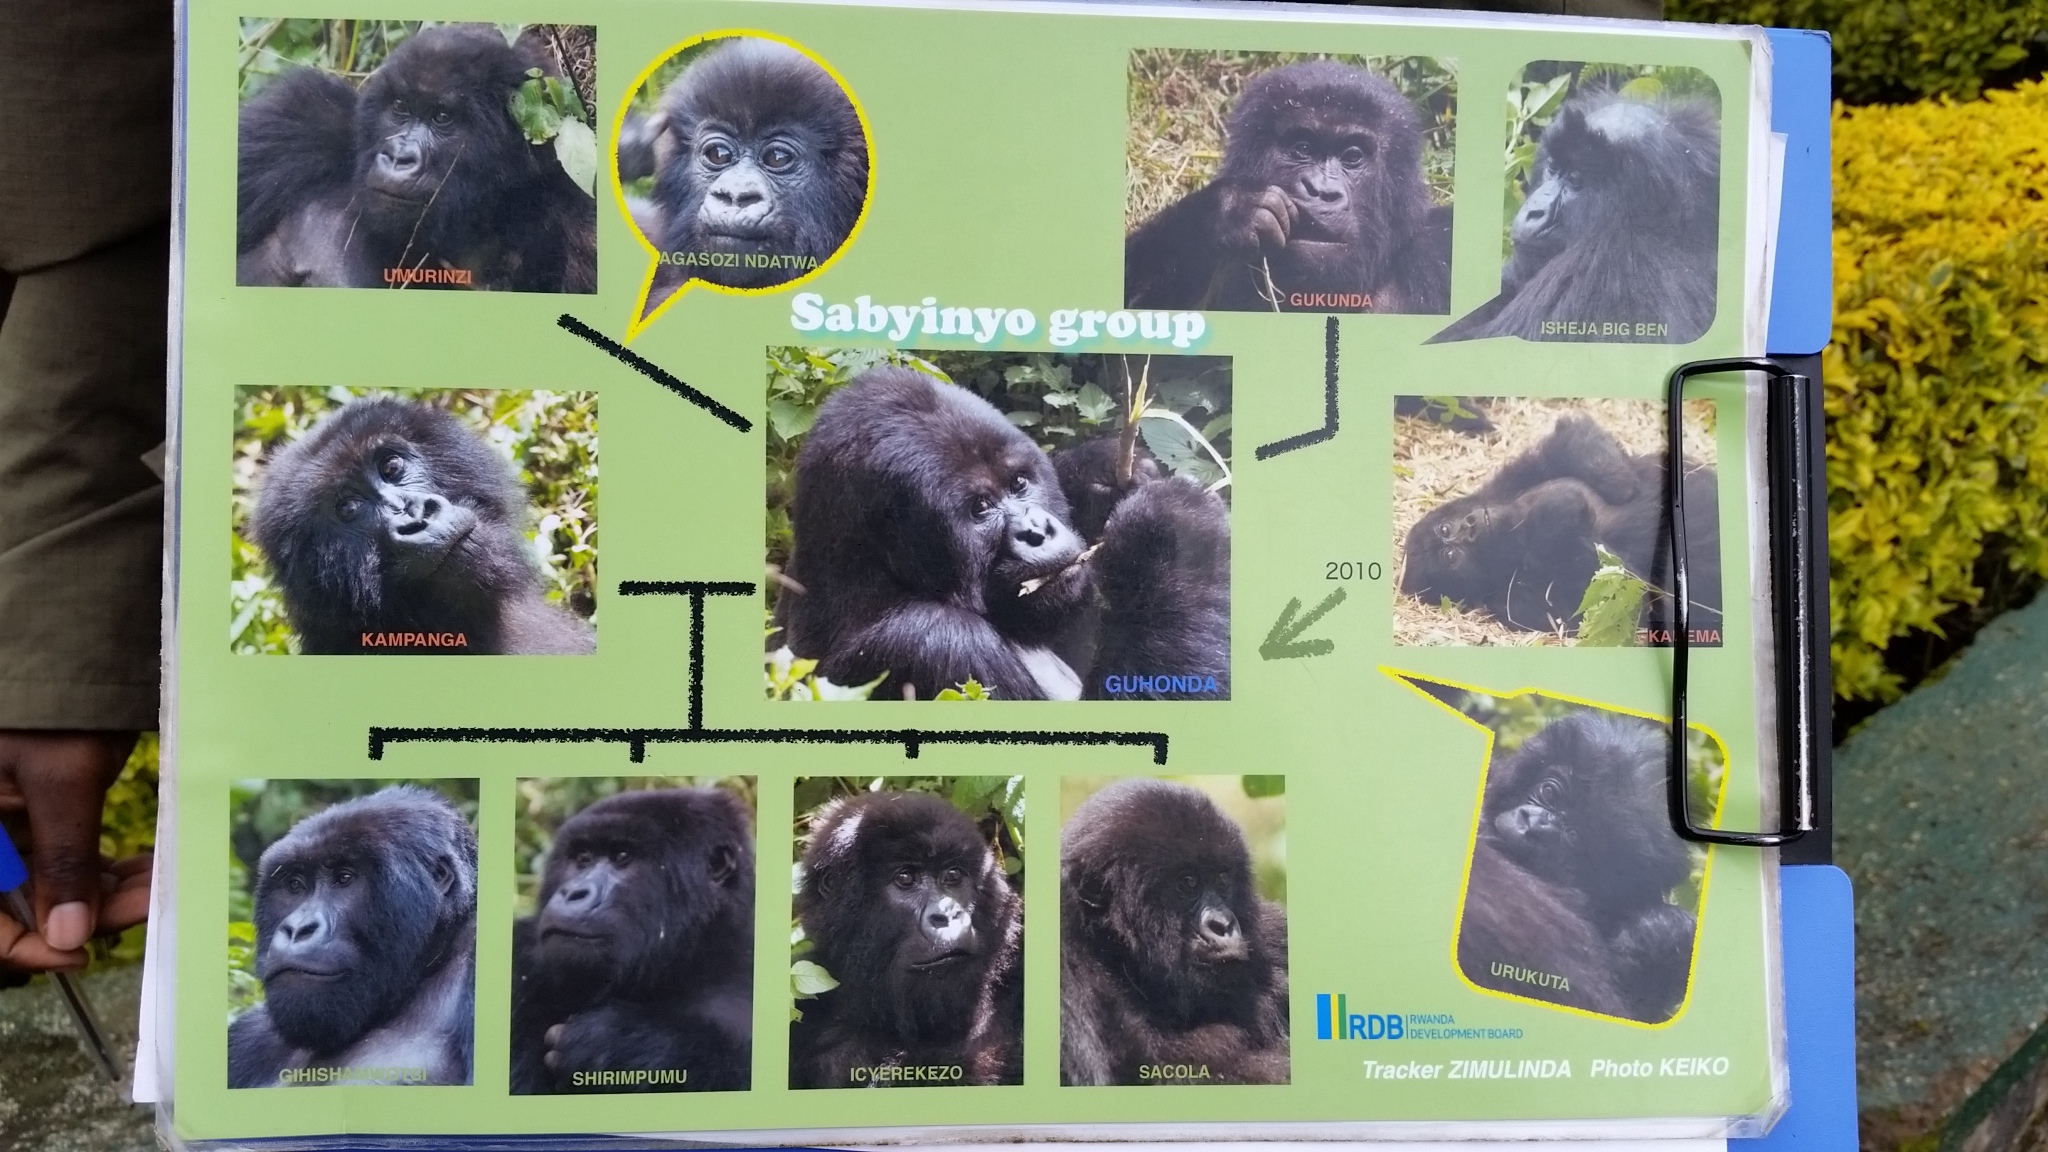 Sabyinyo Group gorillas